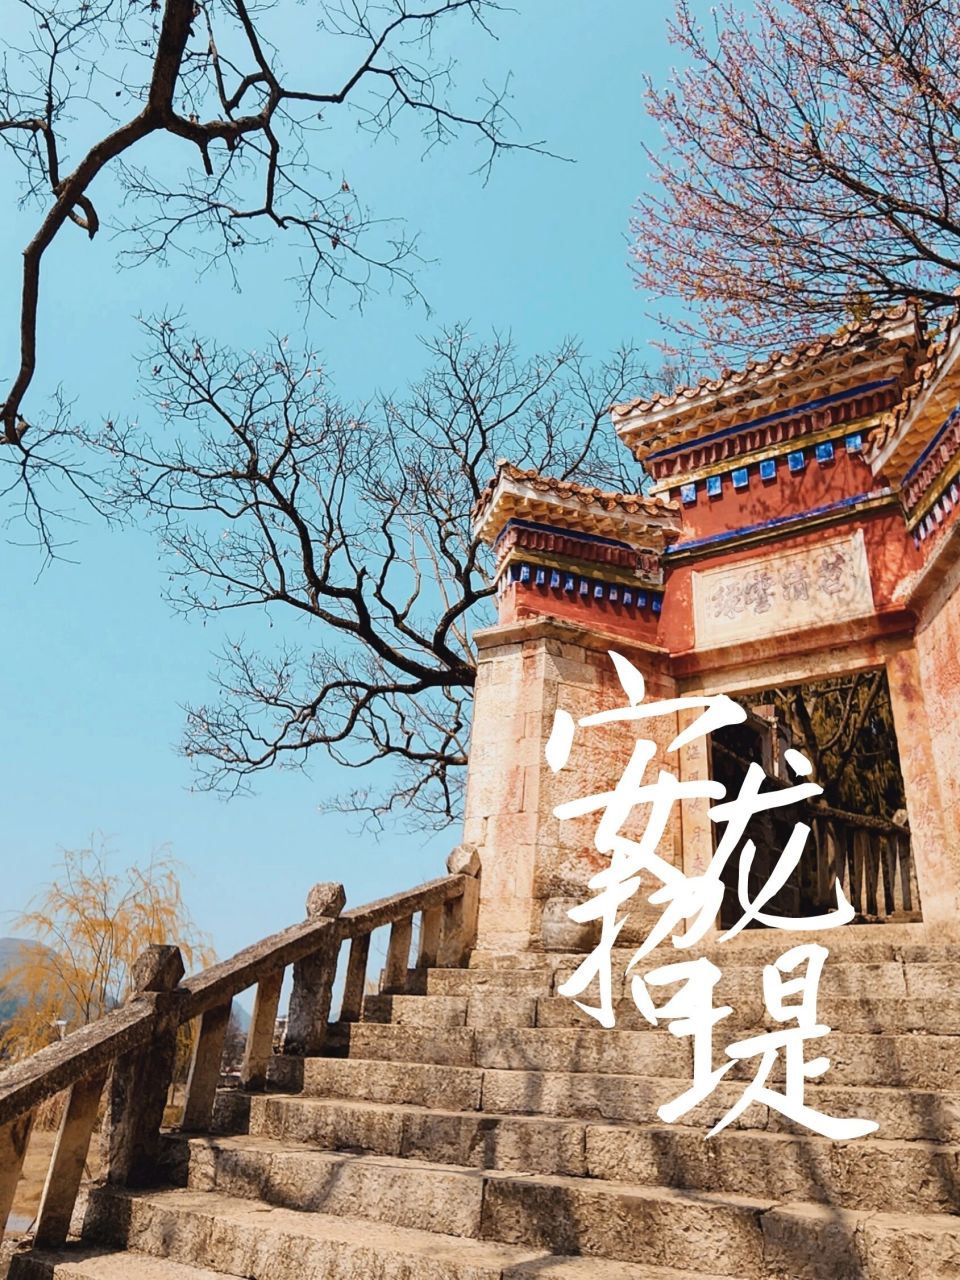 小众景点:安龙招堤 招堤位于安龙县城东北,为贵州省十大风景区之一